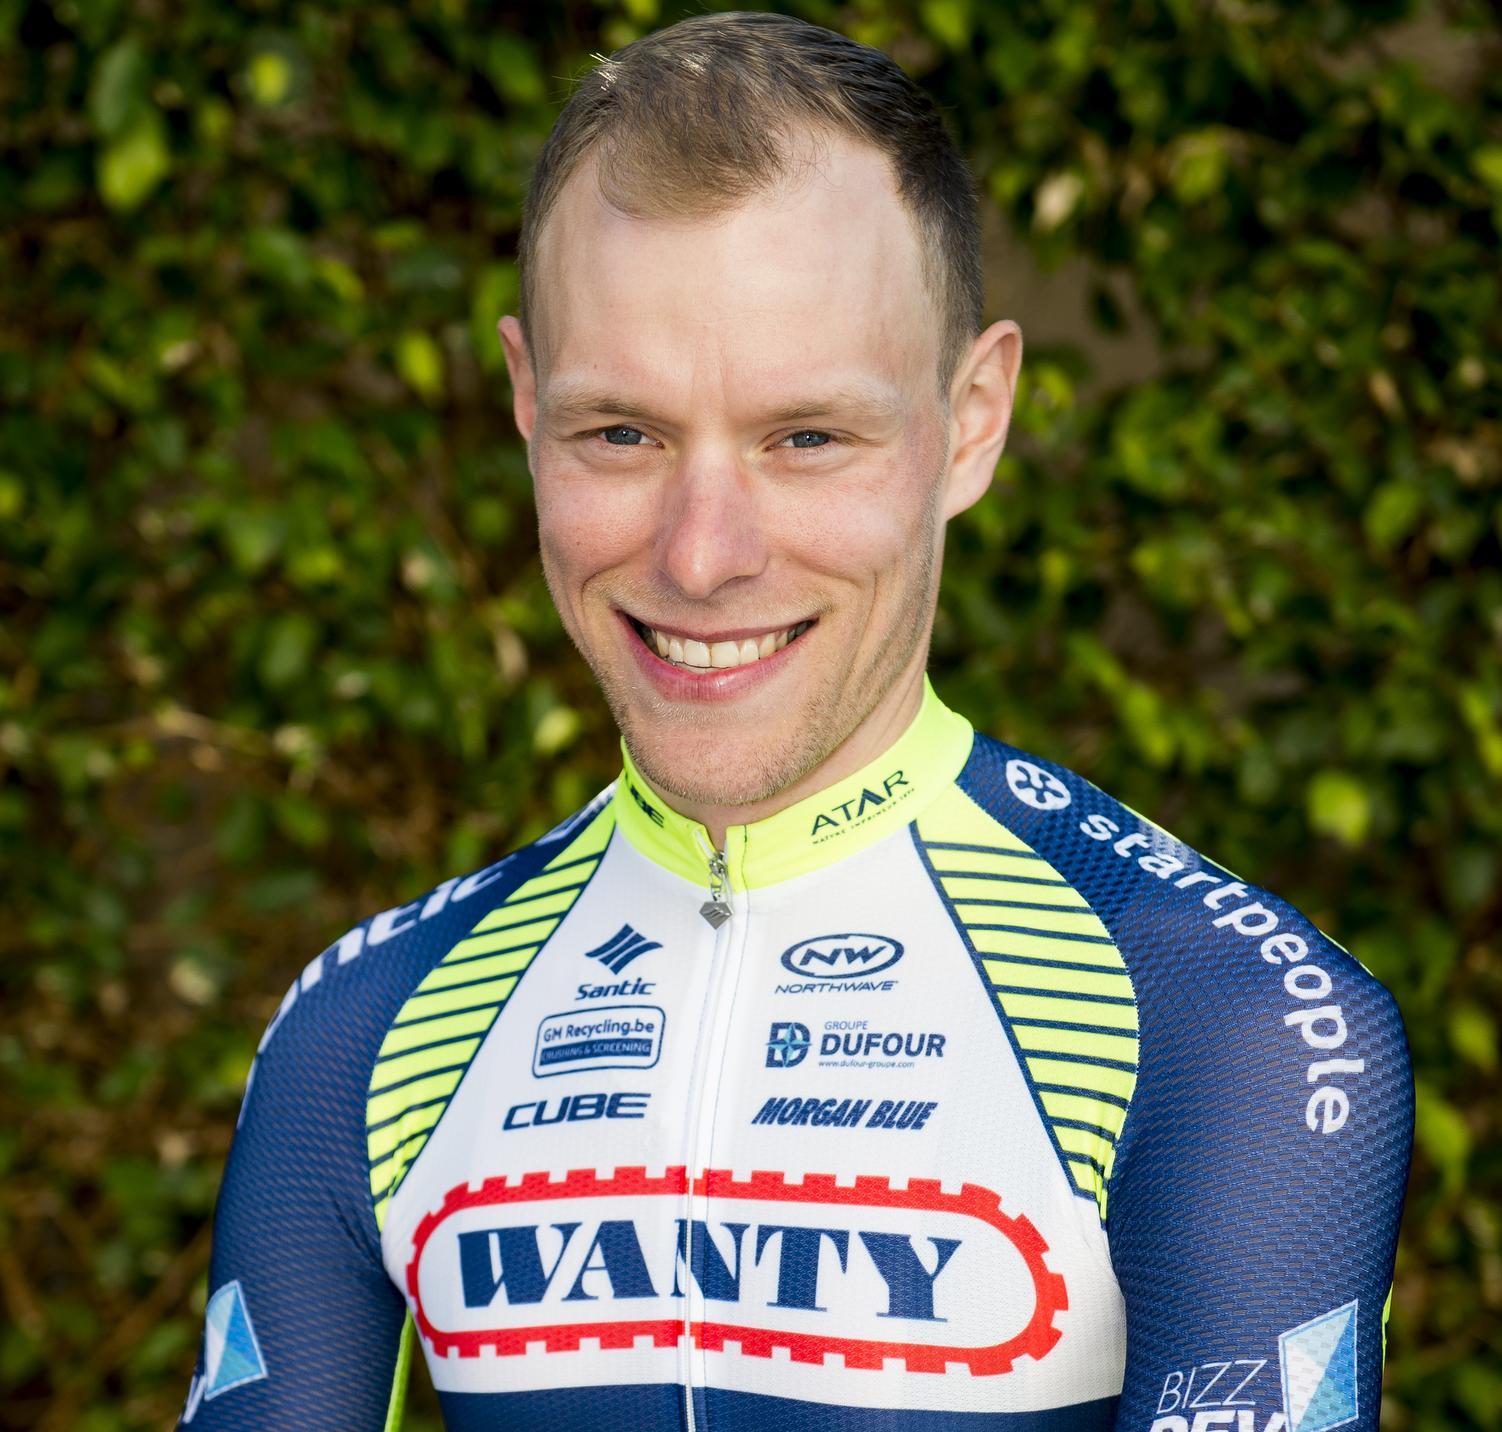 Xandro Meurisse hoopt volgend seizoen de Tour de France te rijden met Wanty-Groupe Gobert. (Foto Belga)